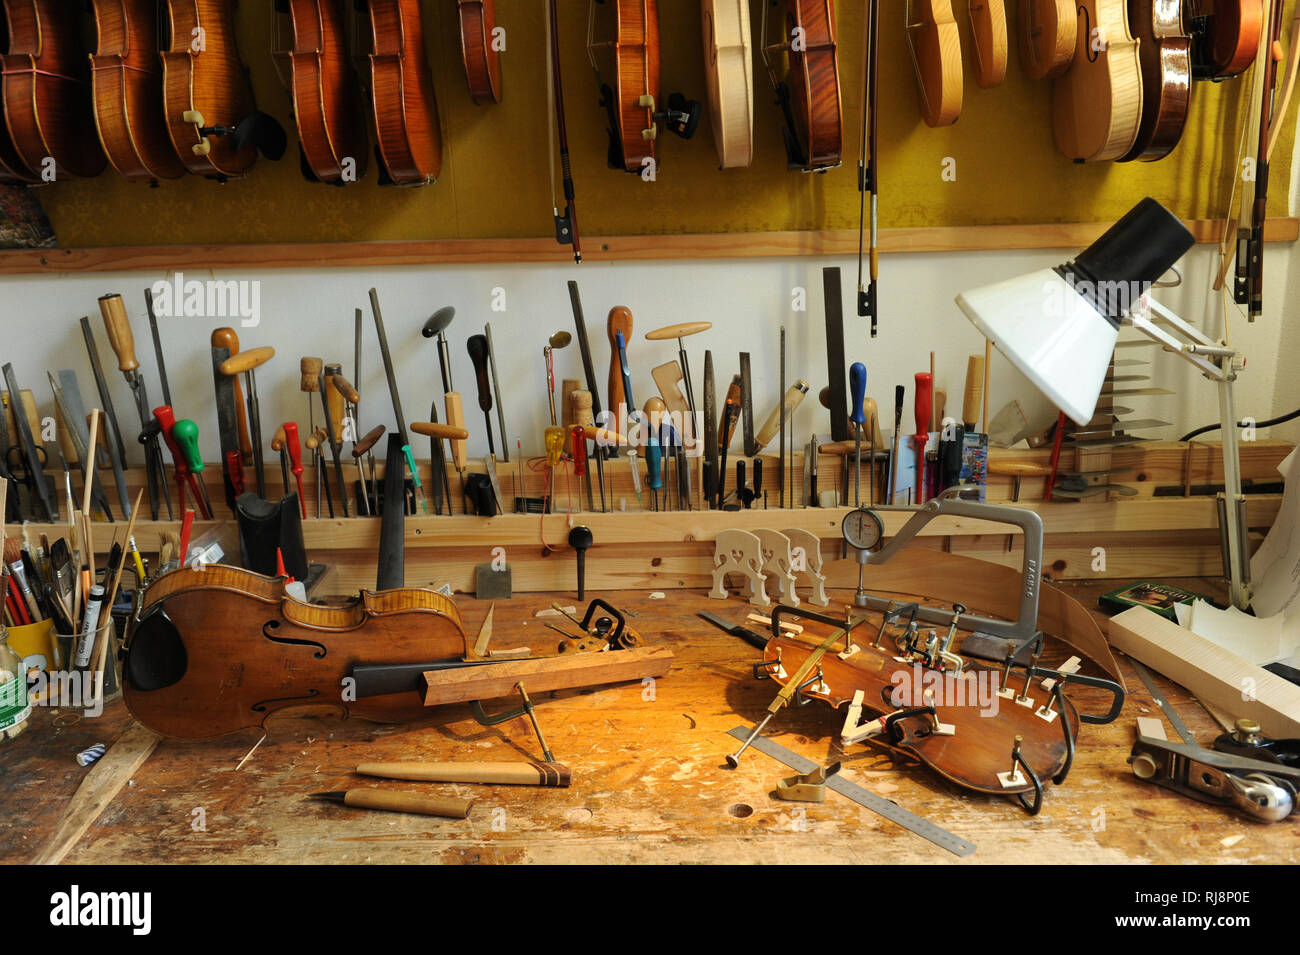 Geigenbau Werkstatt, Werkzeug und Zubehör Stock Photo - Alamy